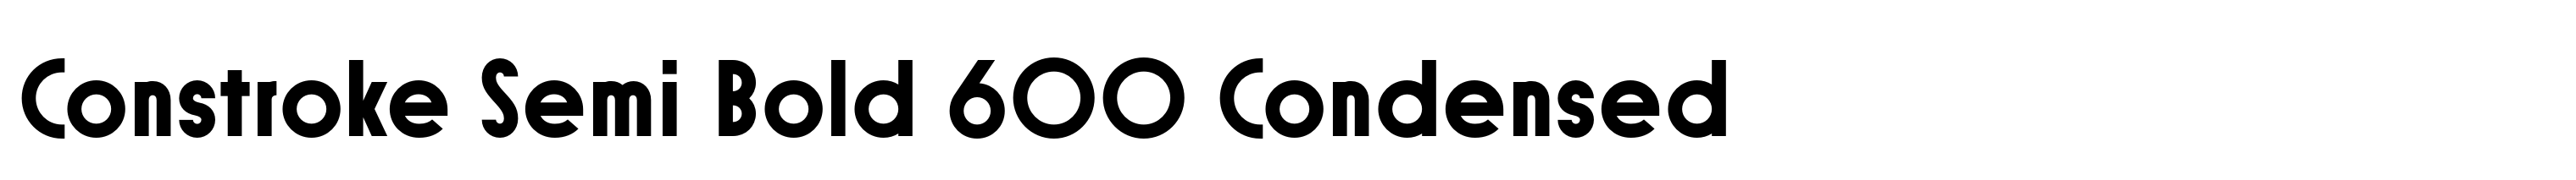 Constroke Semi Bold 600 Condensed